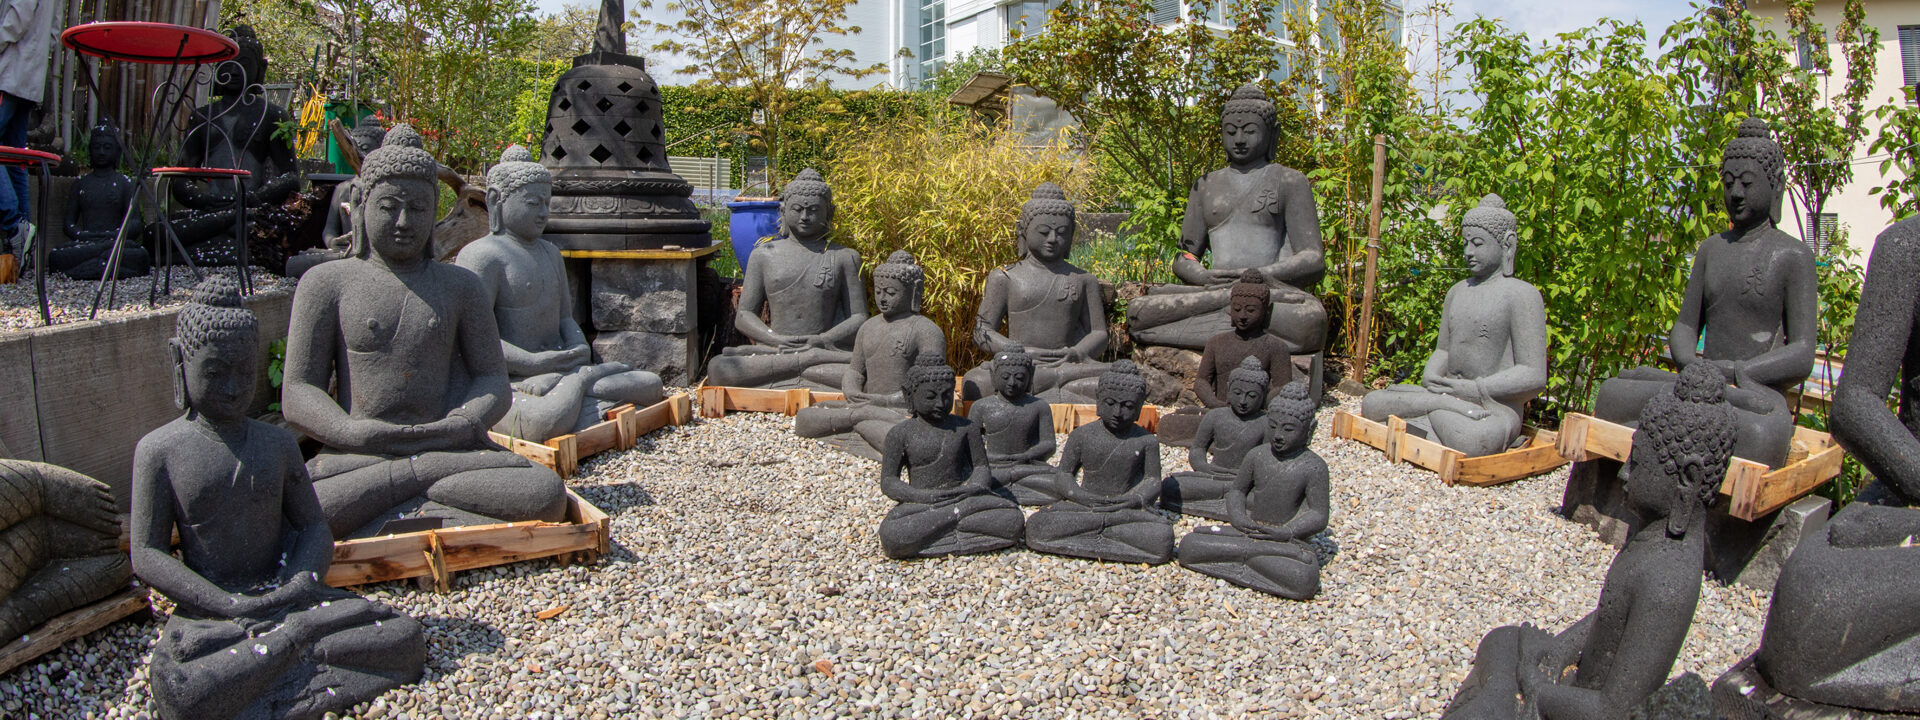 Sliderbild: Handgehauene Buddhas